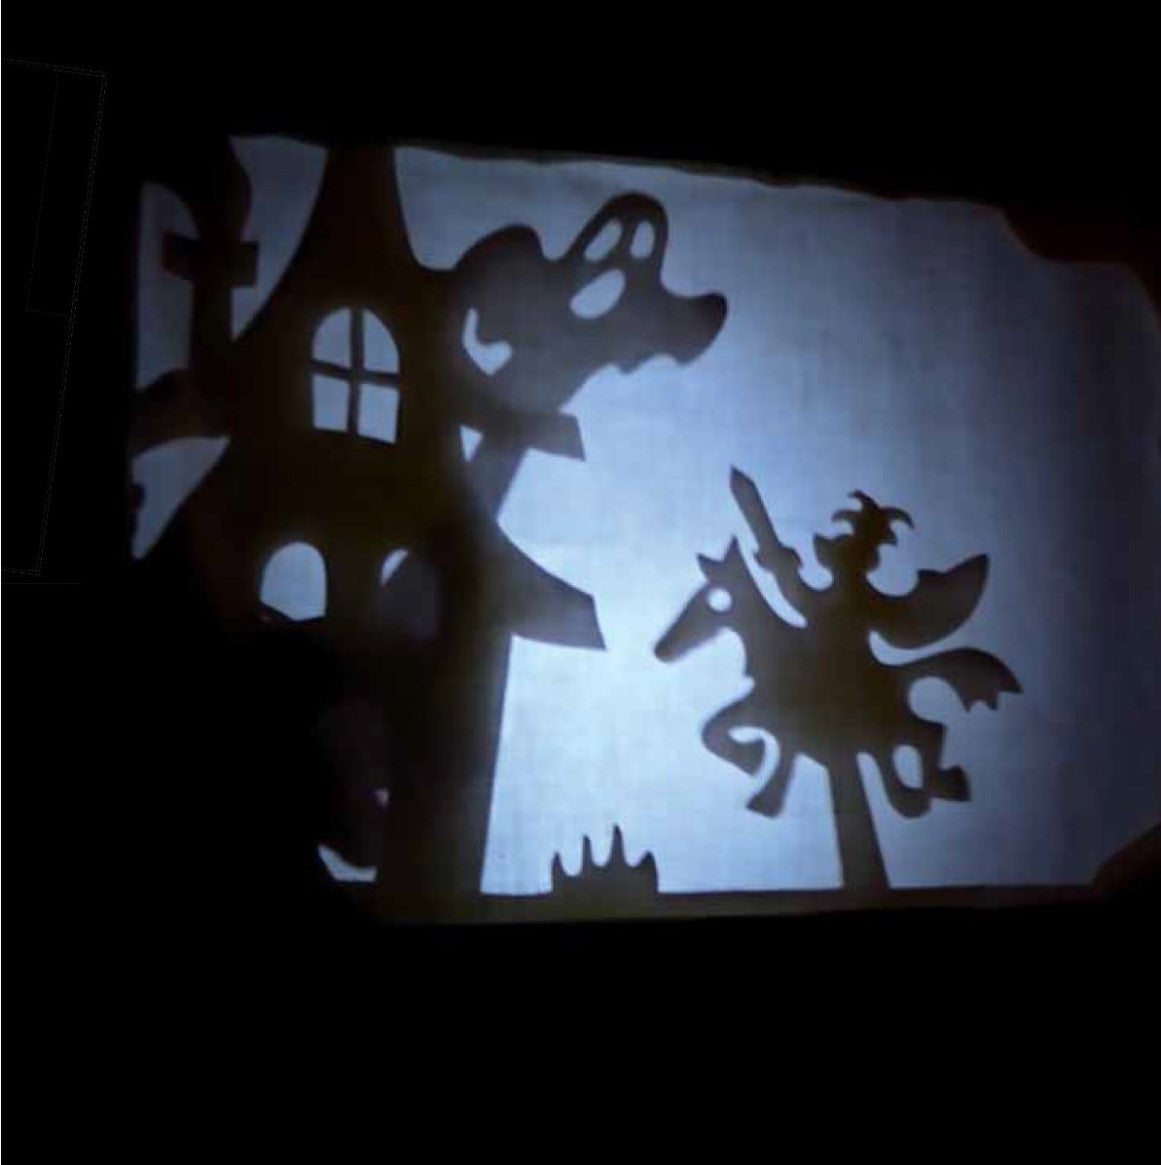 Teatrino delle Ombre: Magici scenari e personaggi fantastici che prendono vita con la luce!